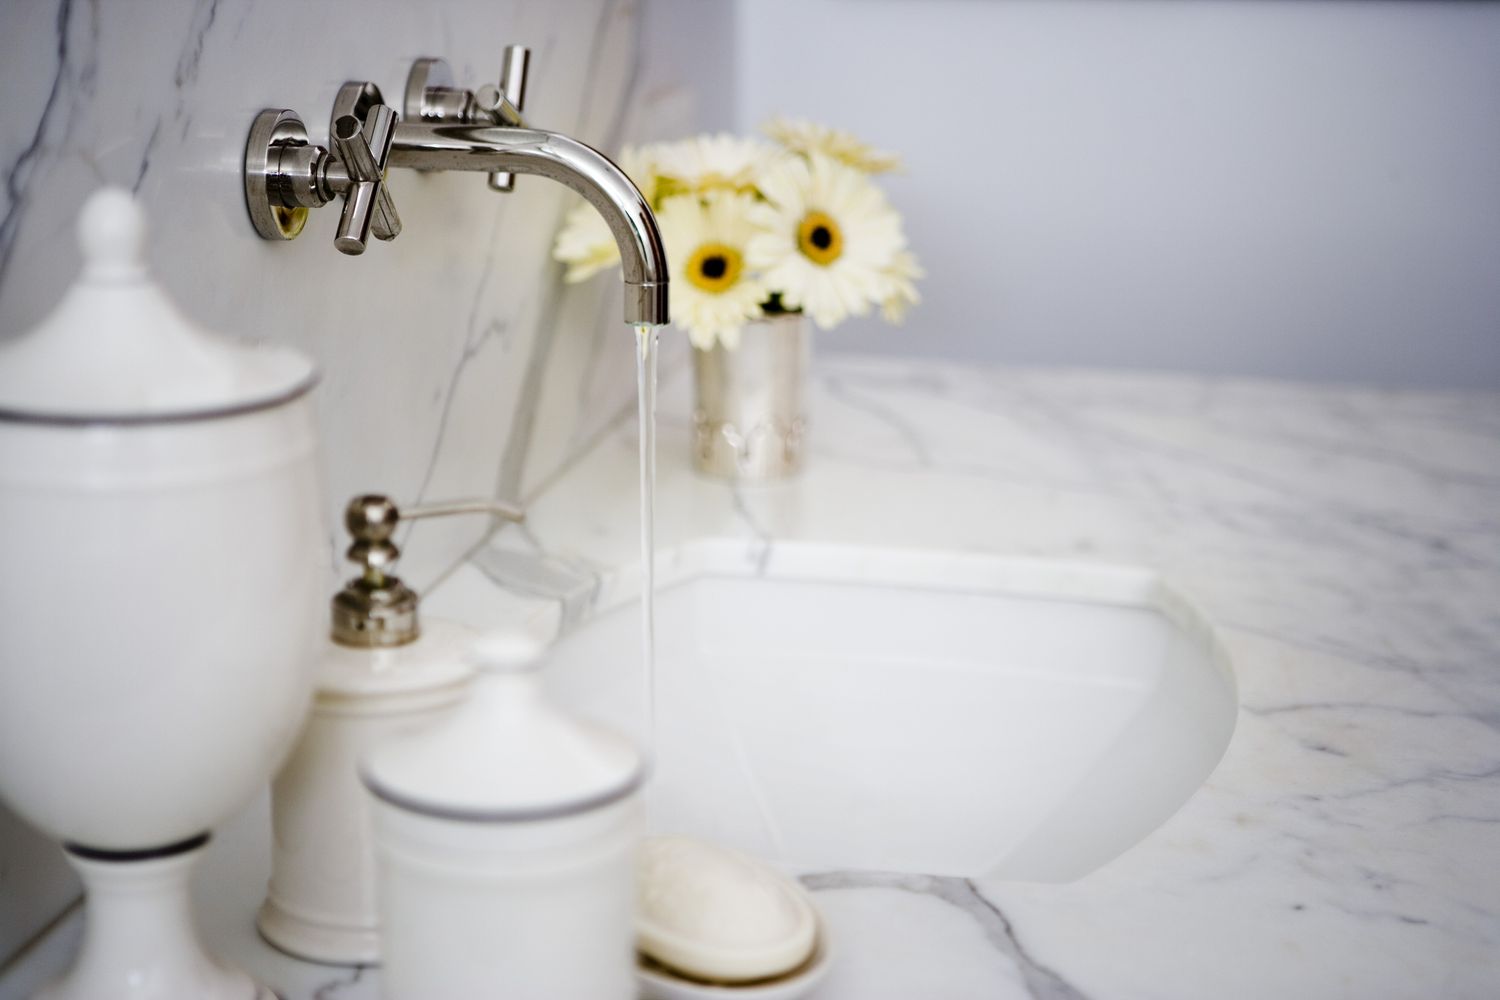 Lavabo del tocador con grifo abierto, jarrón de flores y accesorios de baño